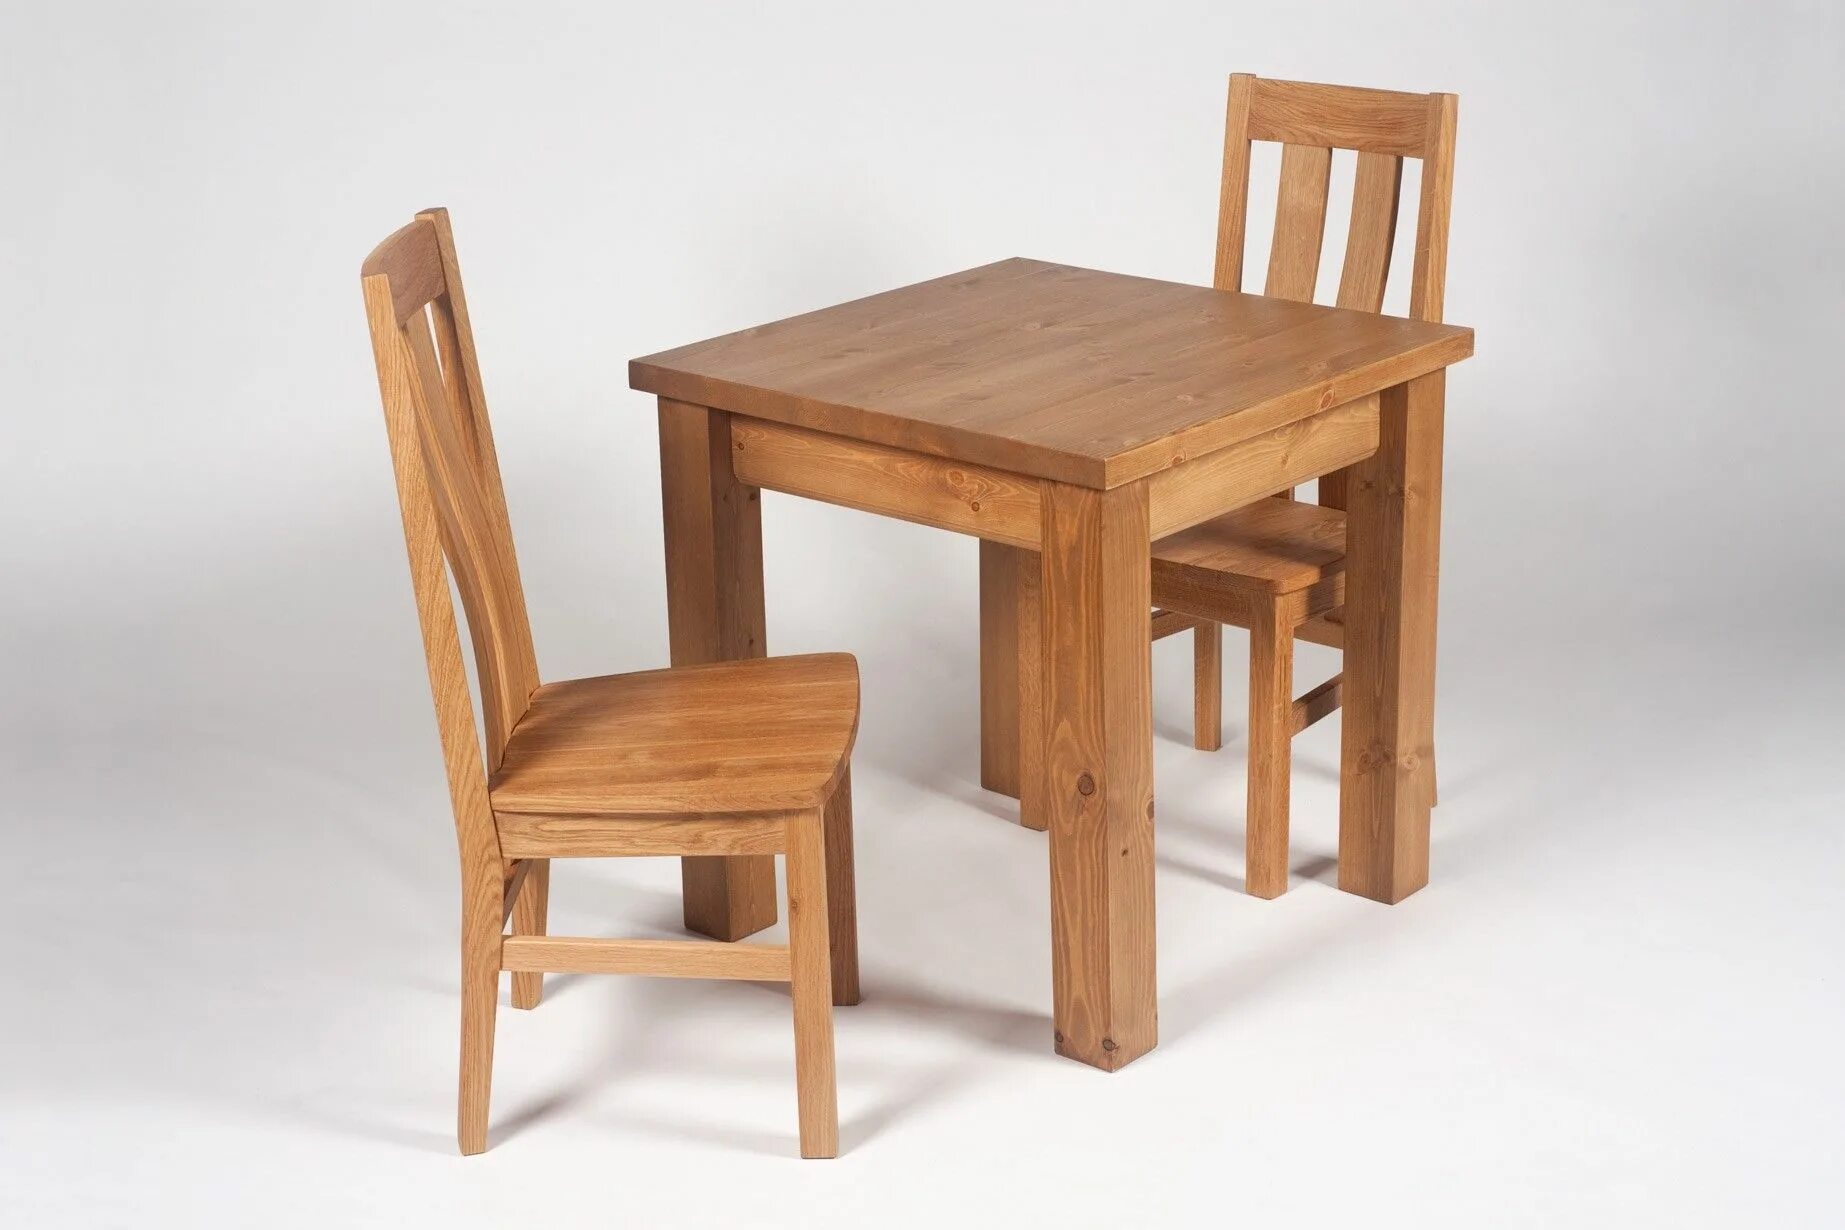 Кипи стол. Деревянный стол со стульями. Стол простой. Деревянные деревянные стулья голубые. Высокий одиночный стол.